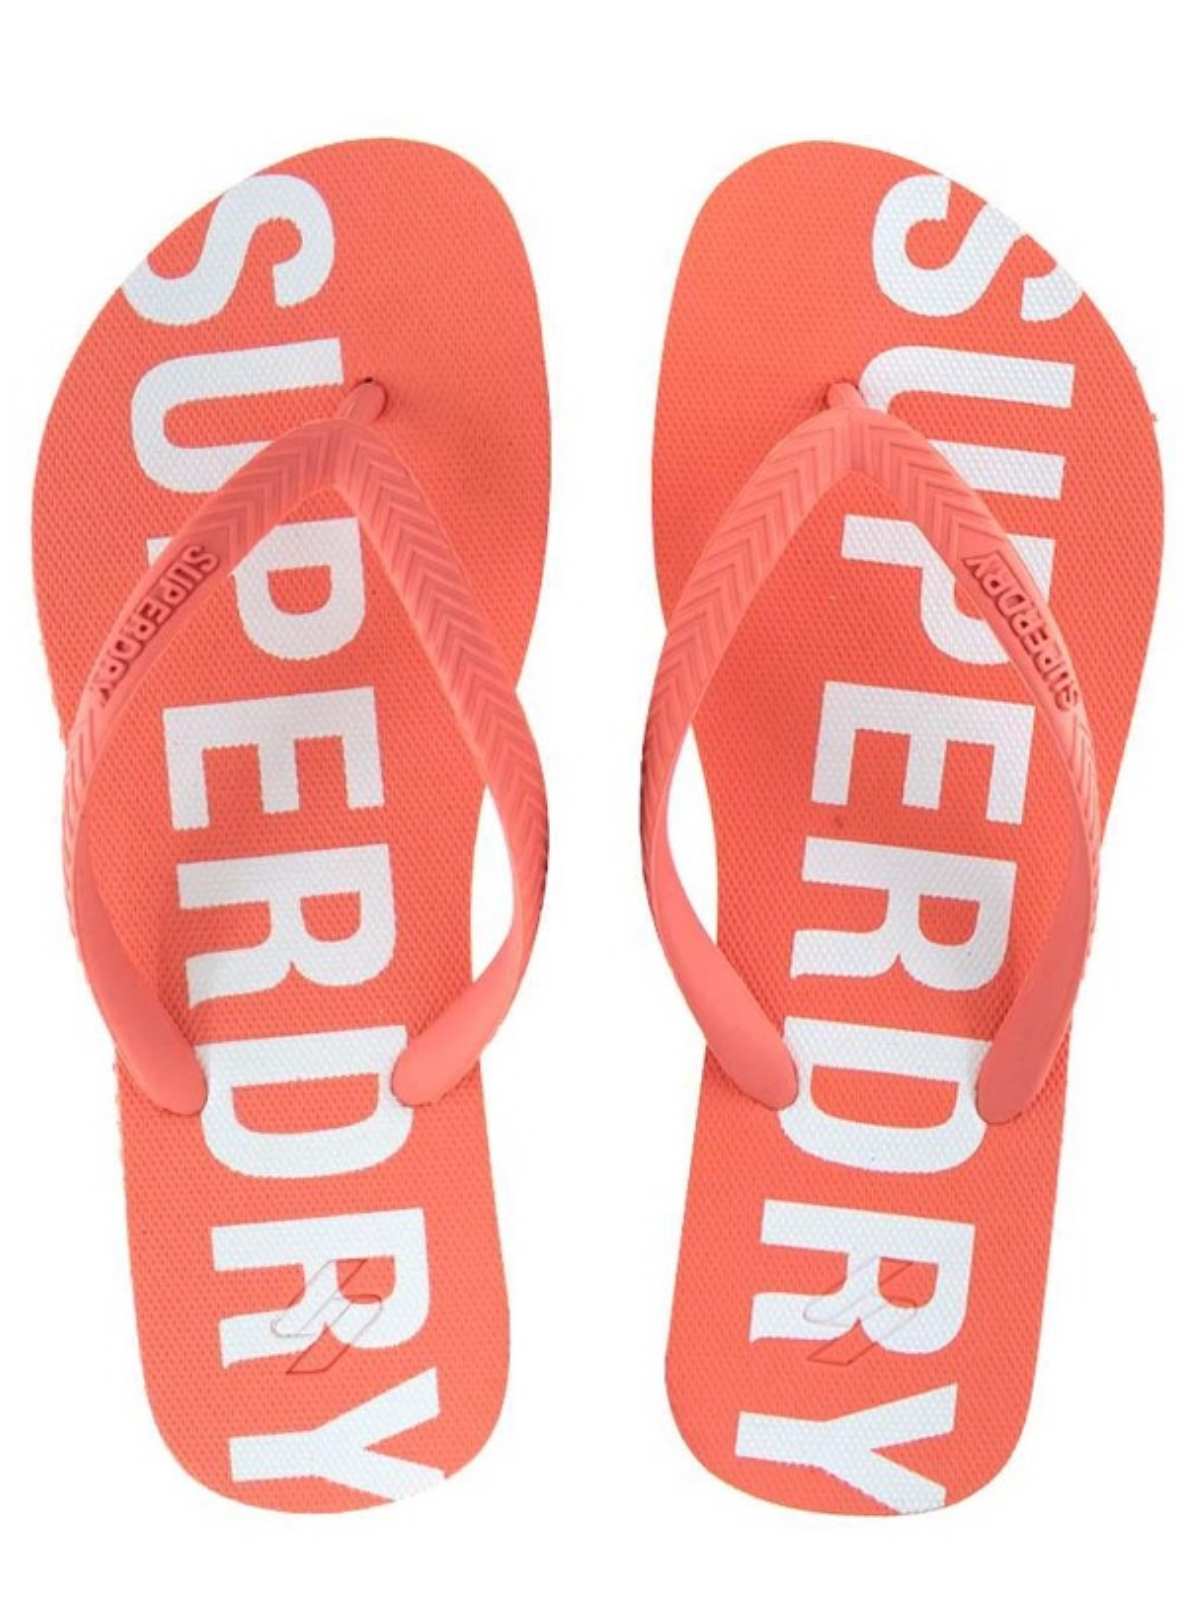   Superdry | Code Essential | Womens Flip Flops